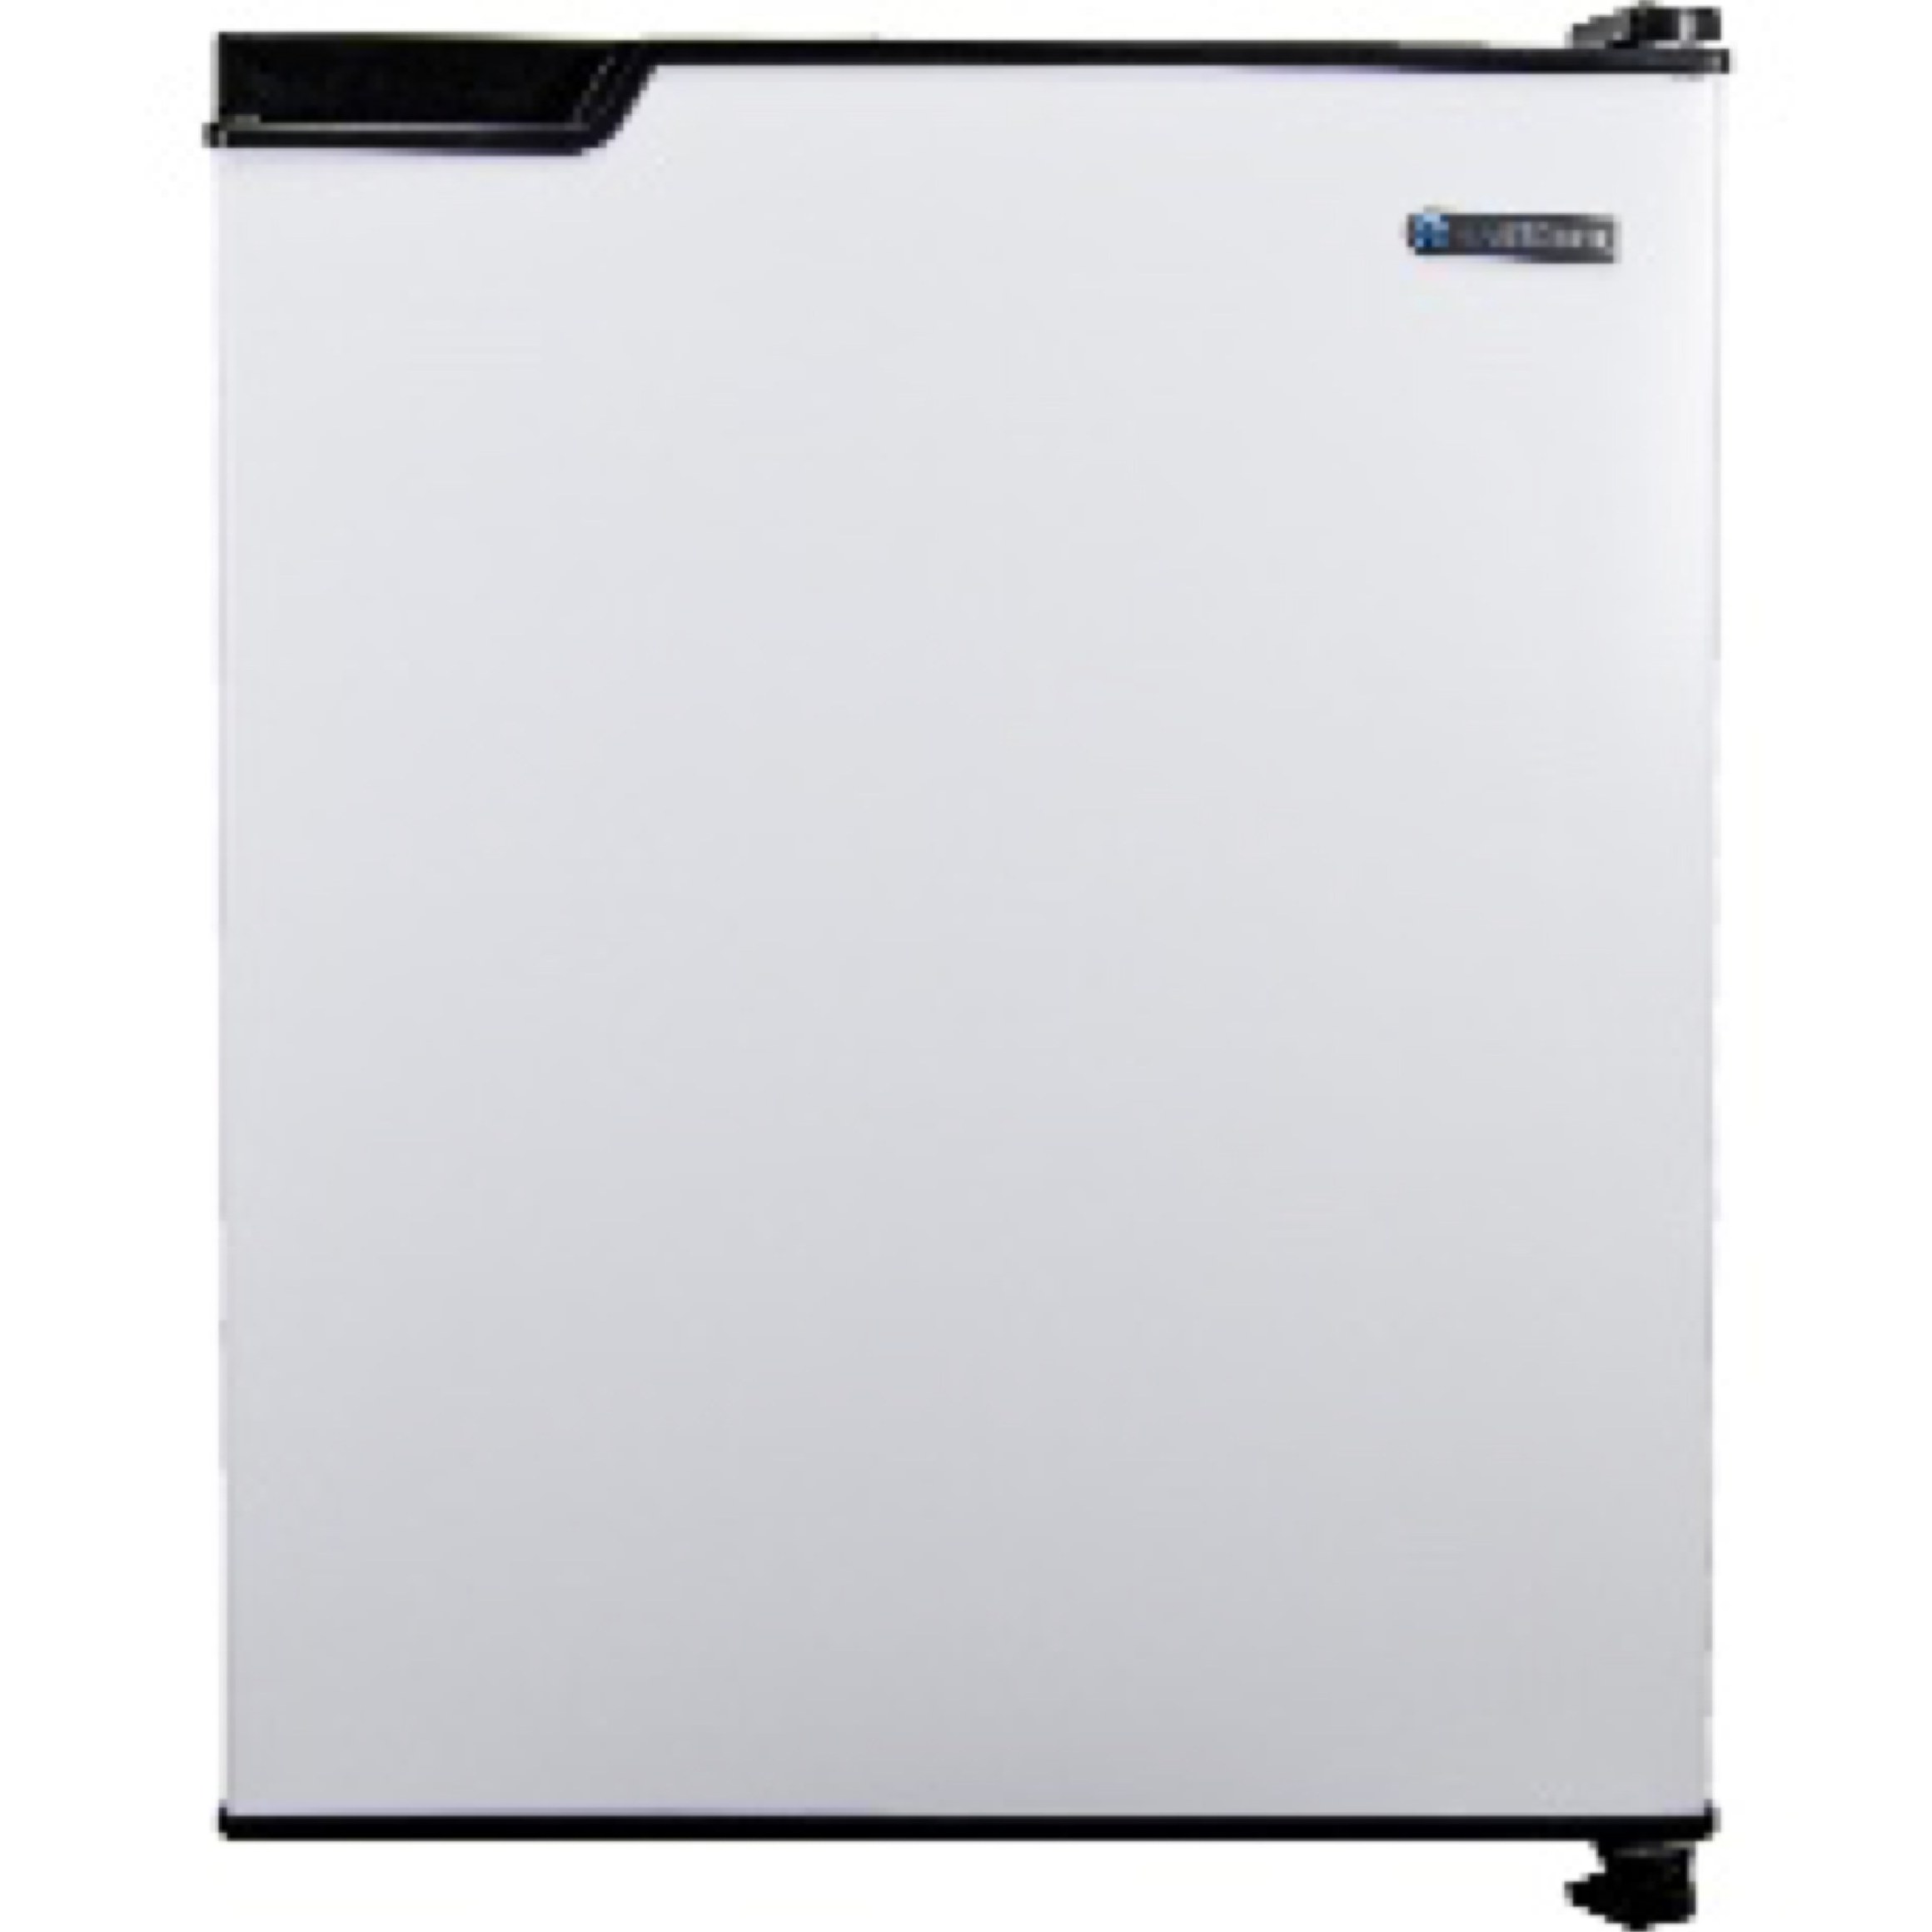 خرید و قیمت یخچال ایستکول مدل TM-9540-A3 ا EastCool TM-9540-A3 Refrigerator| ترب